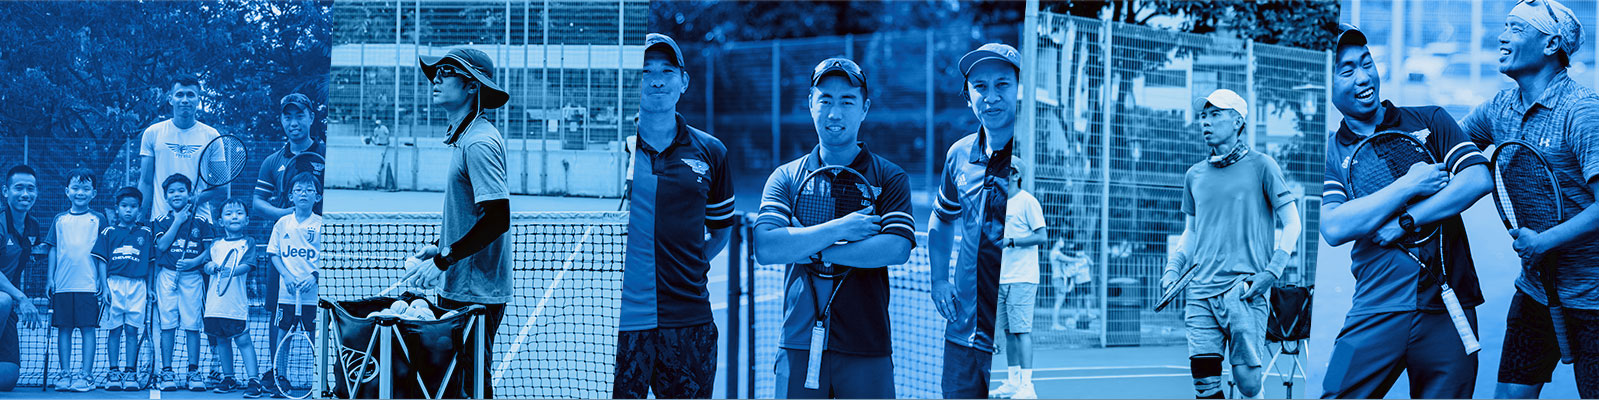 What makes FSA Tennis Academy Singapore unique?